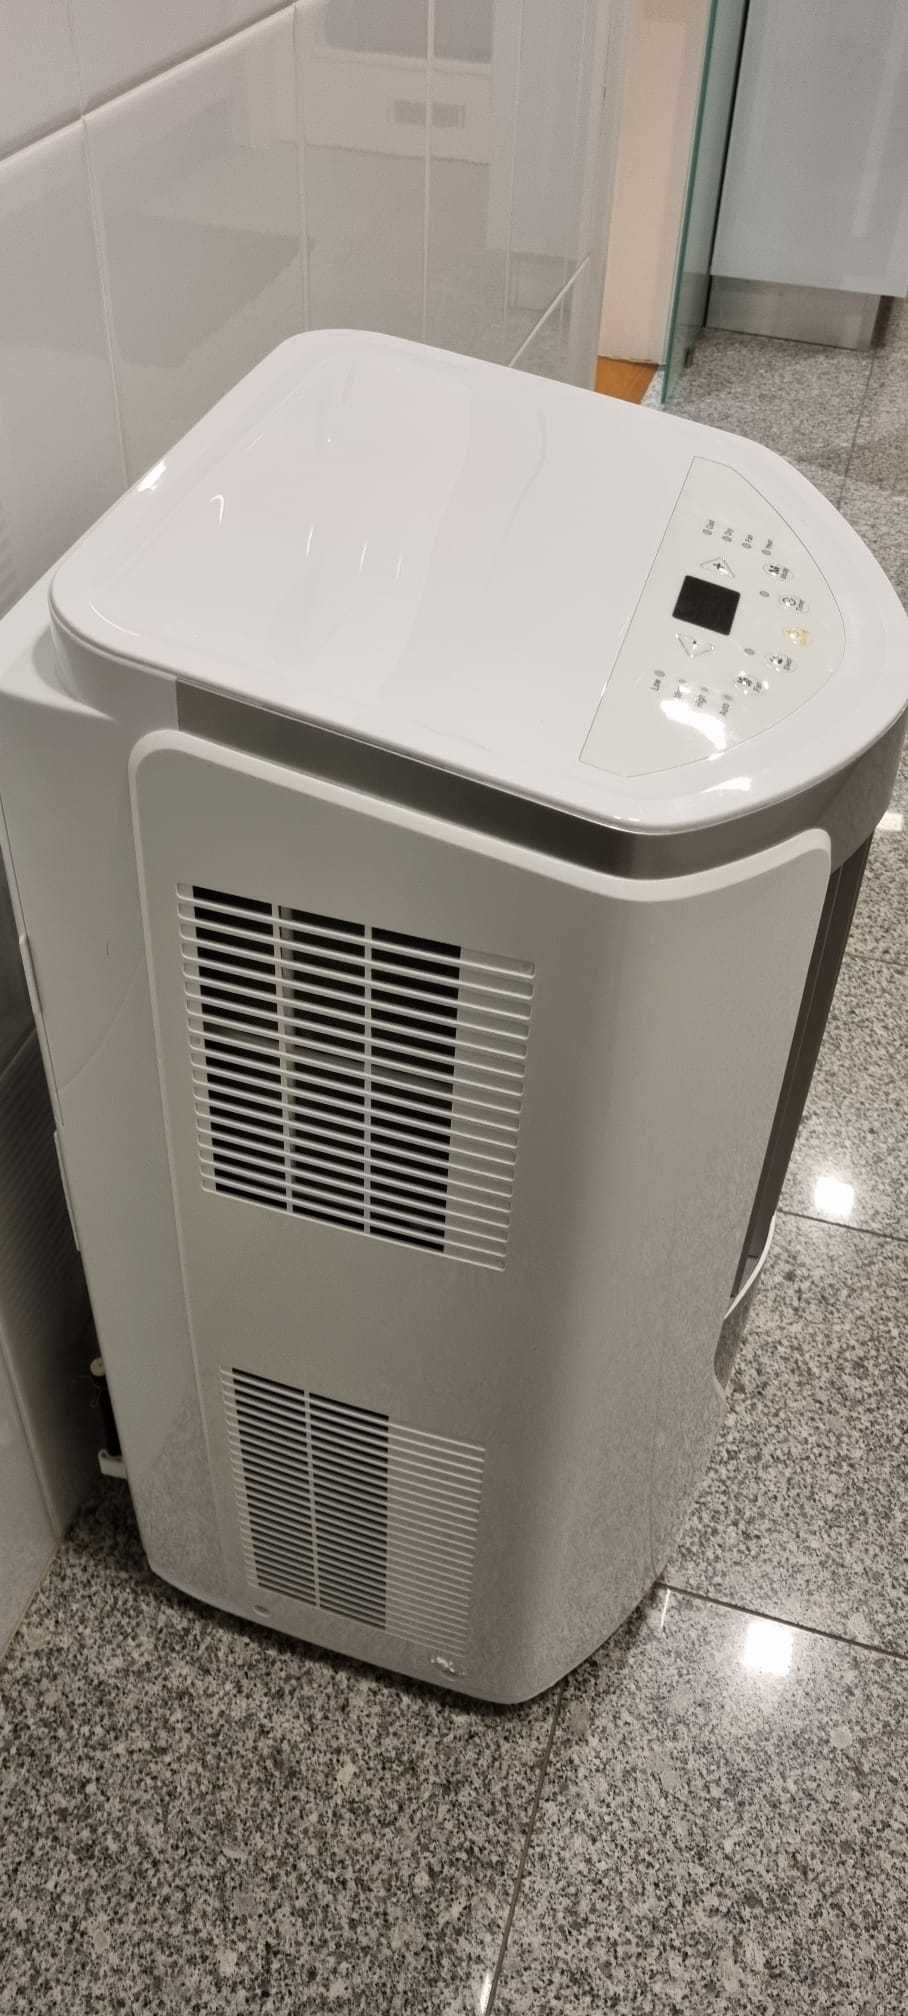 Ar condicionado portátil com aquecimento